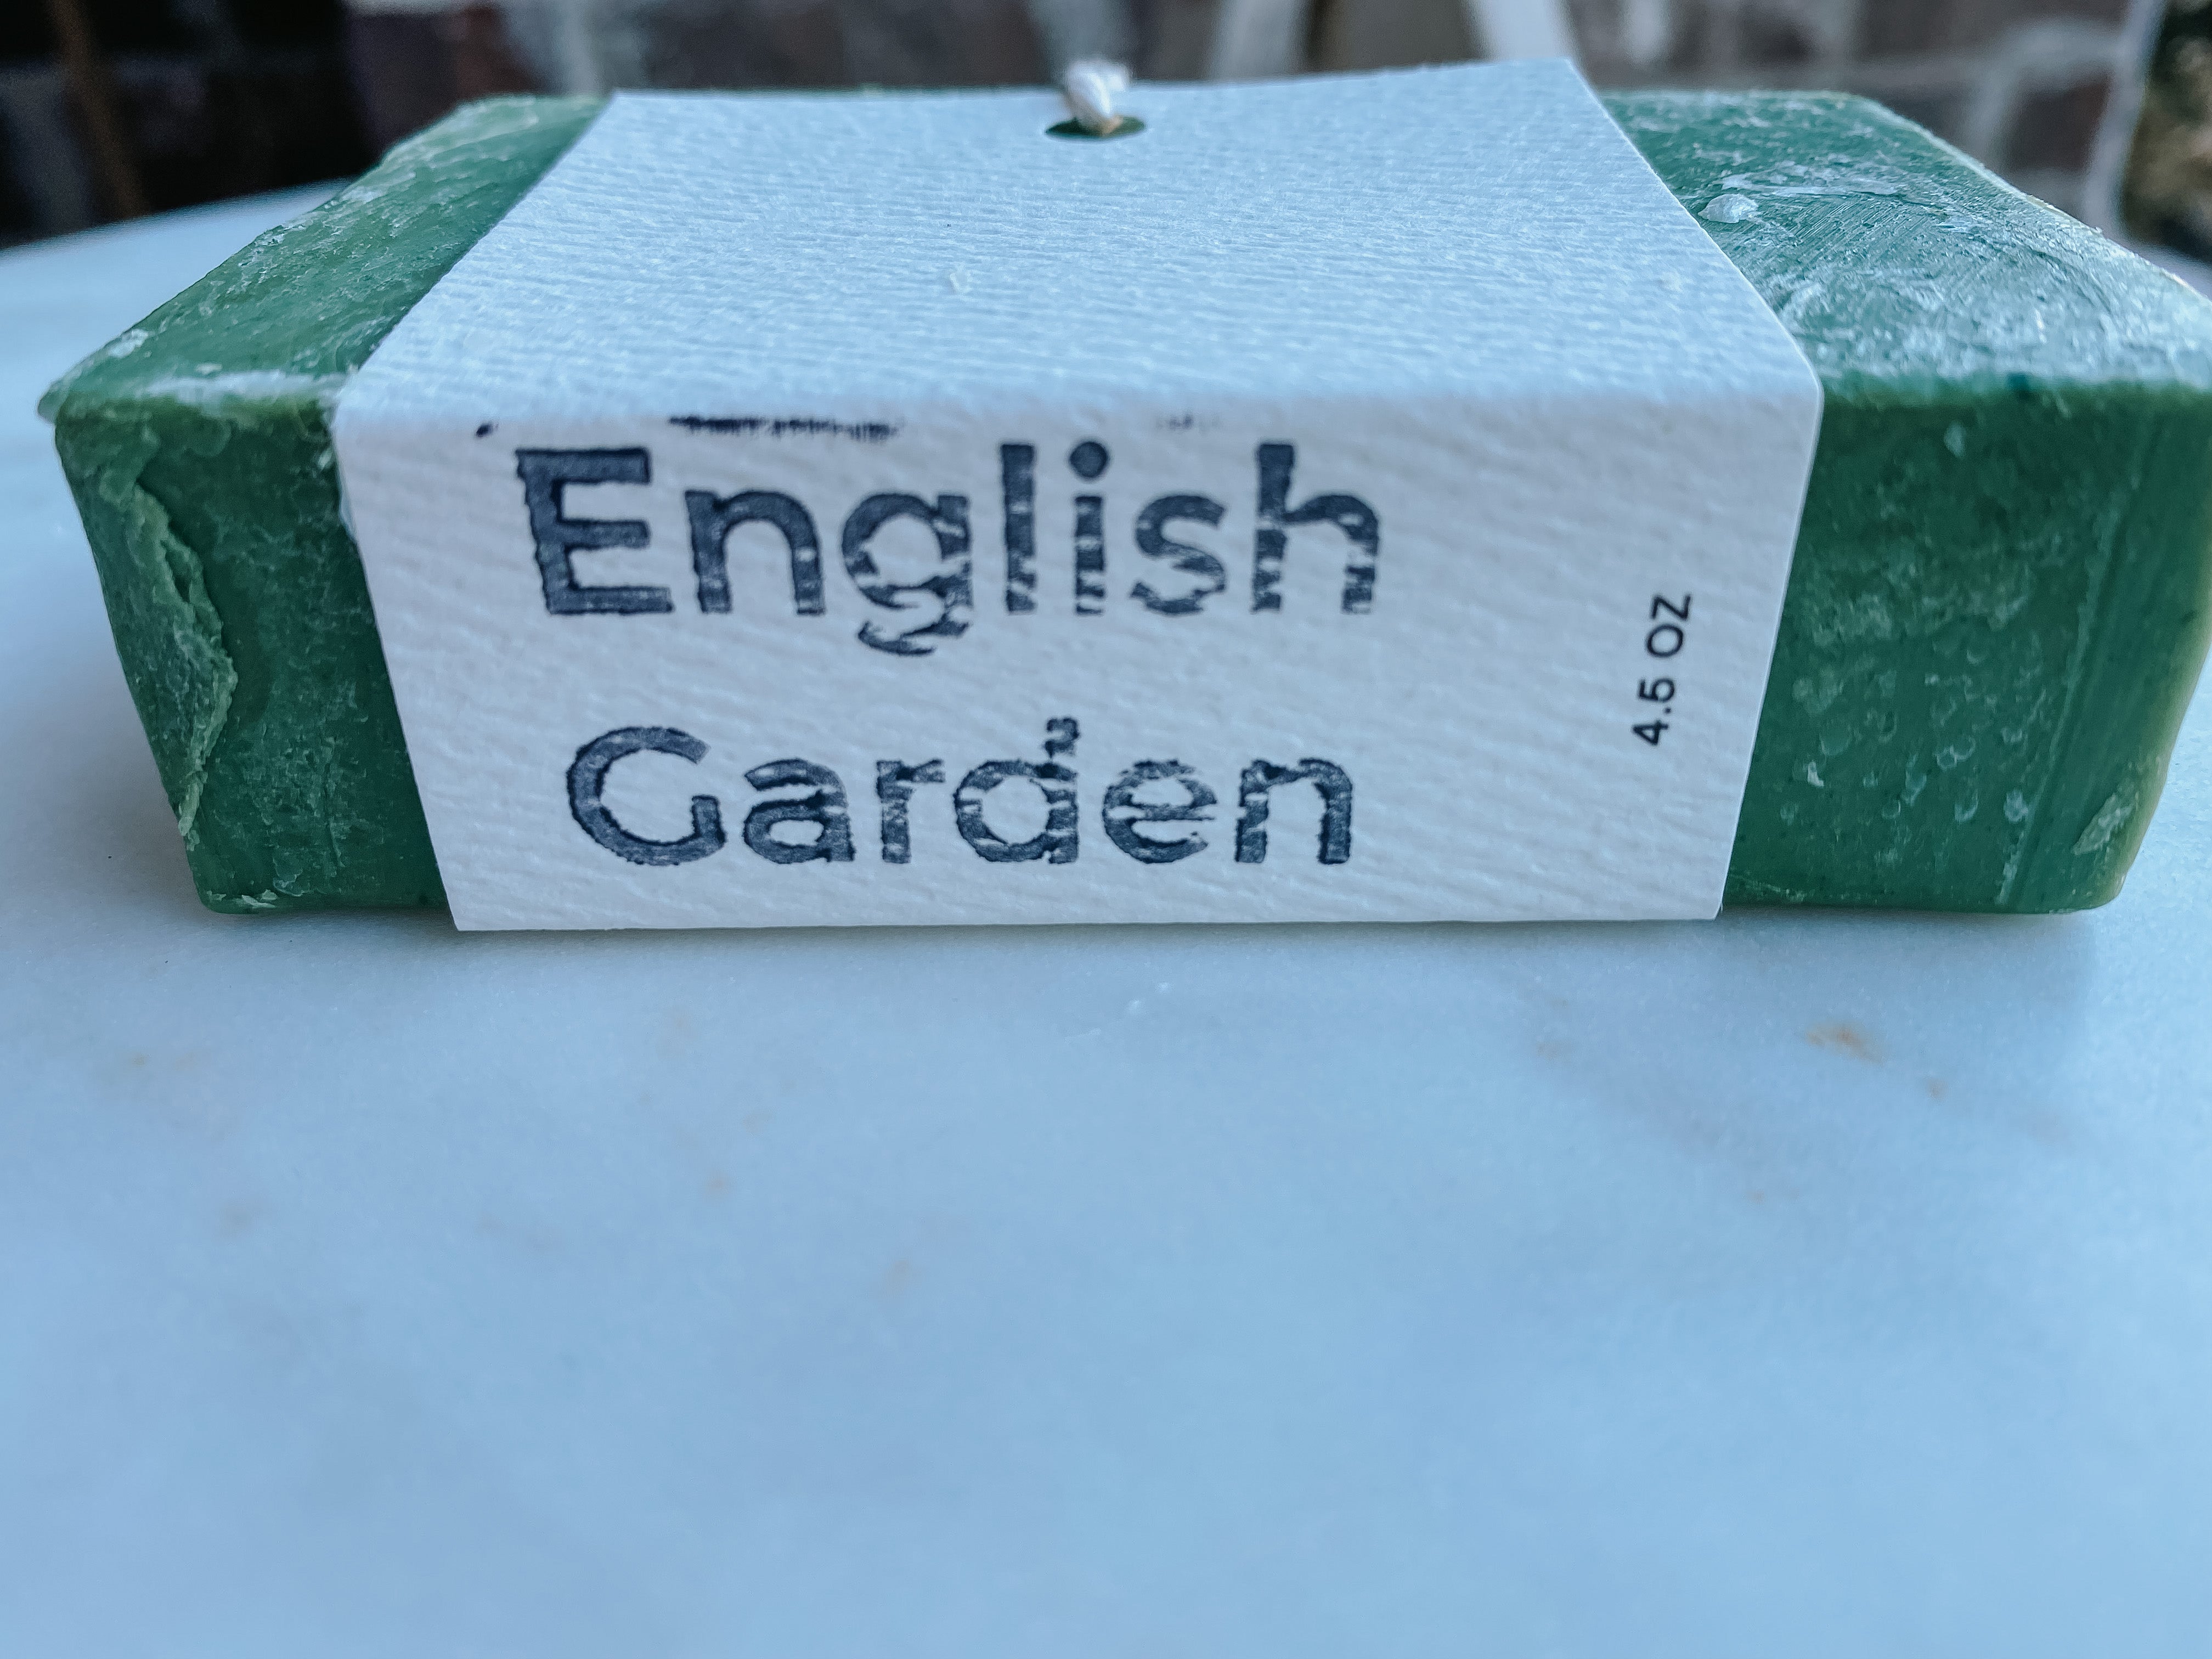 English Garden Cold Process Soap